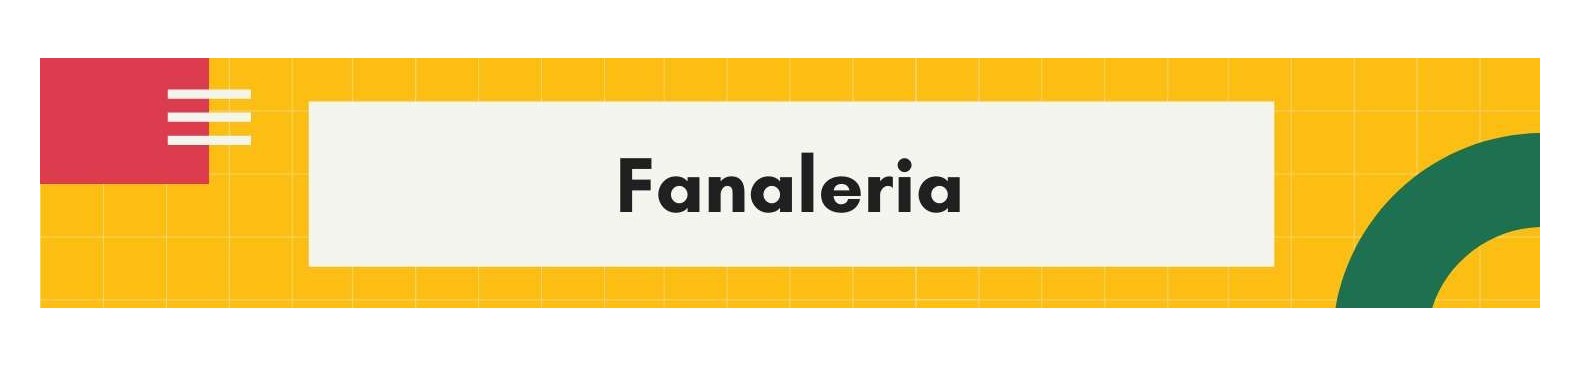 Fanaleria